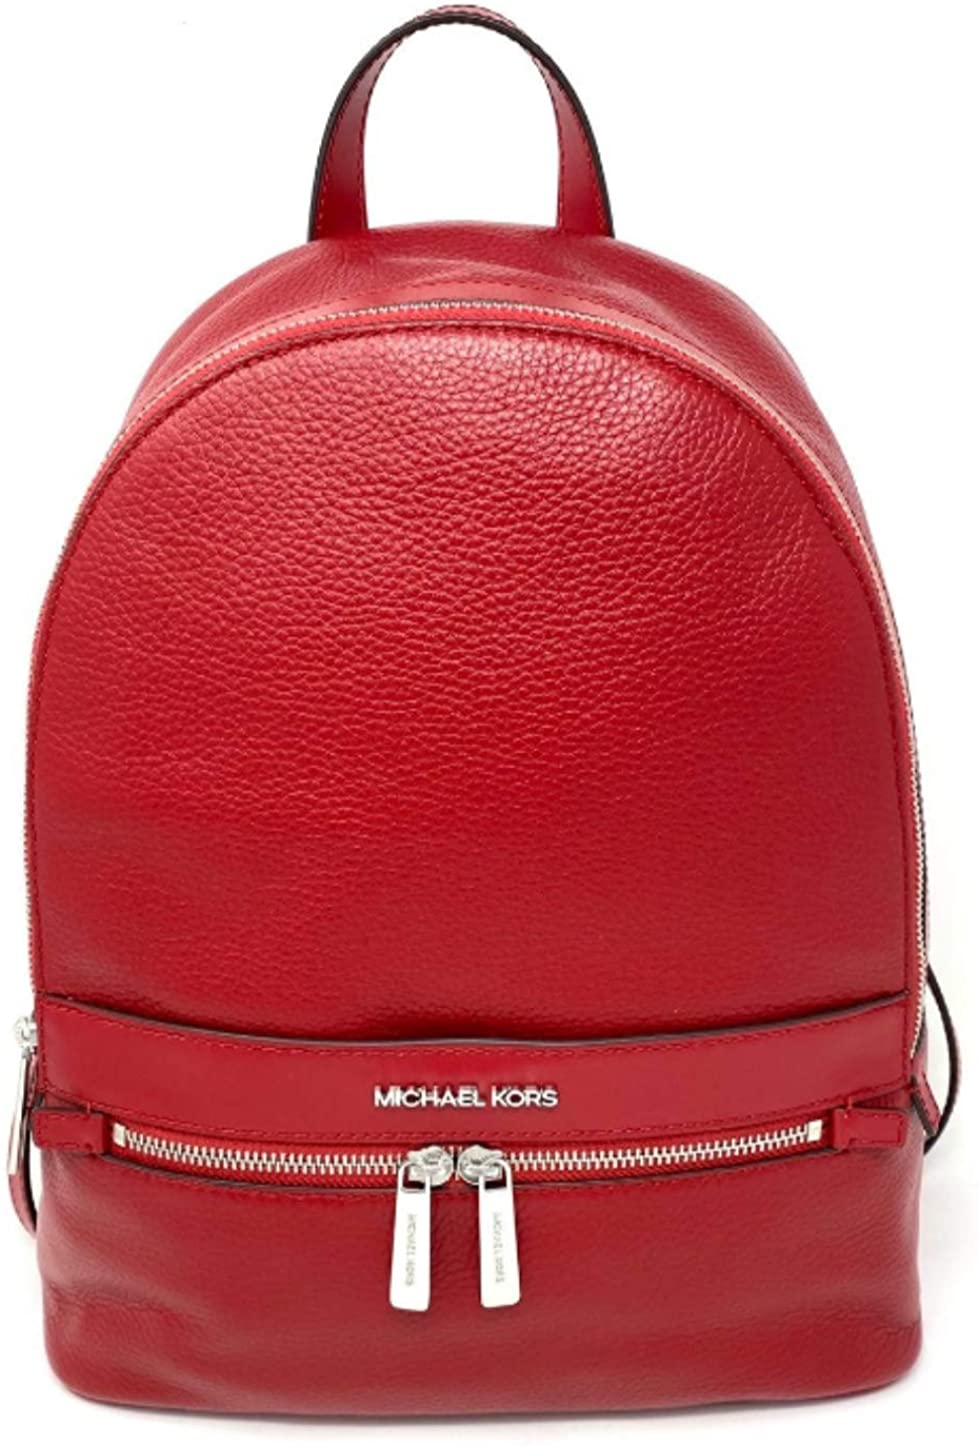 mk backpack purse outlet